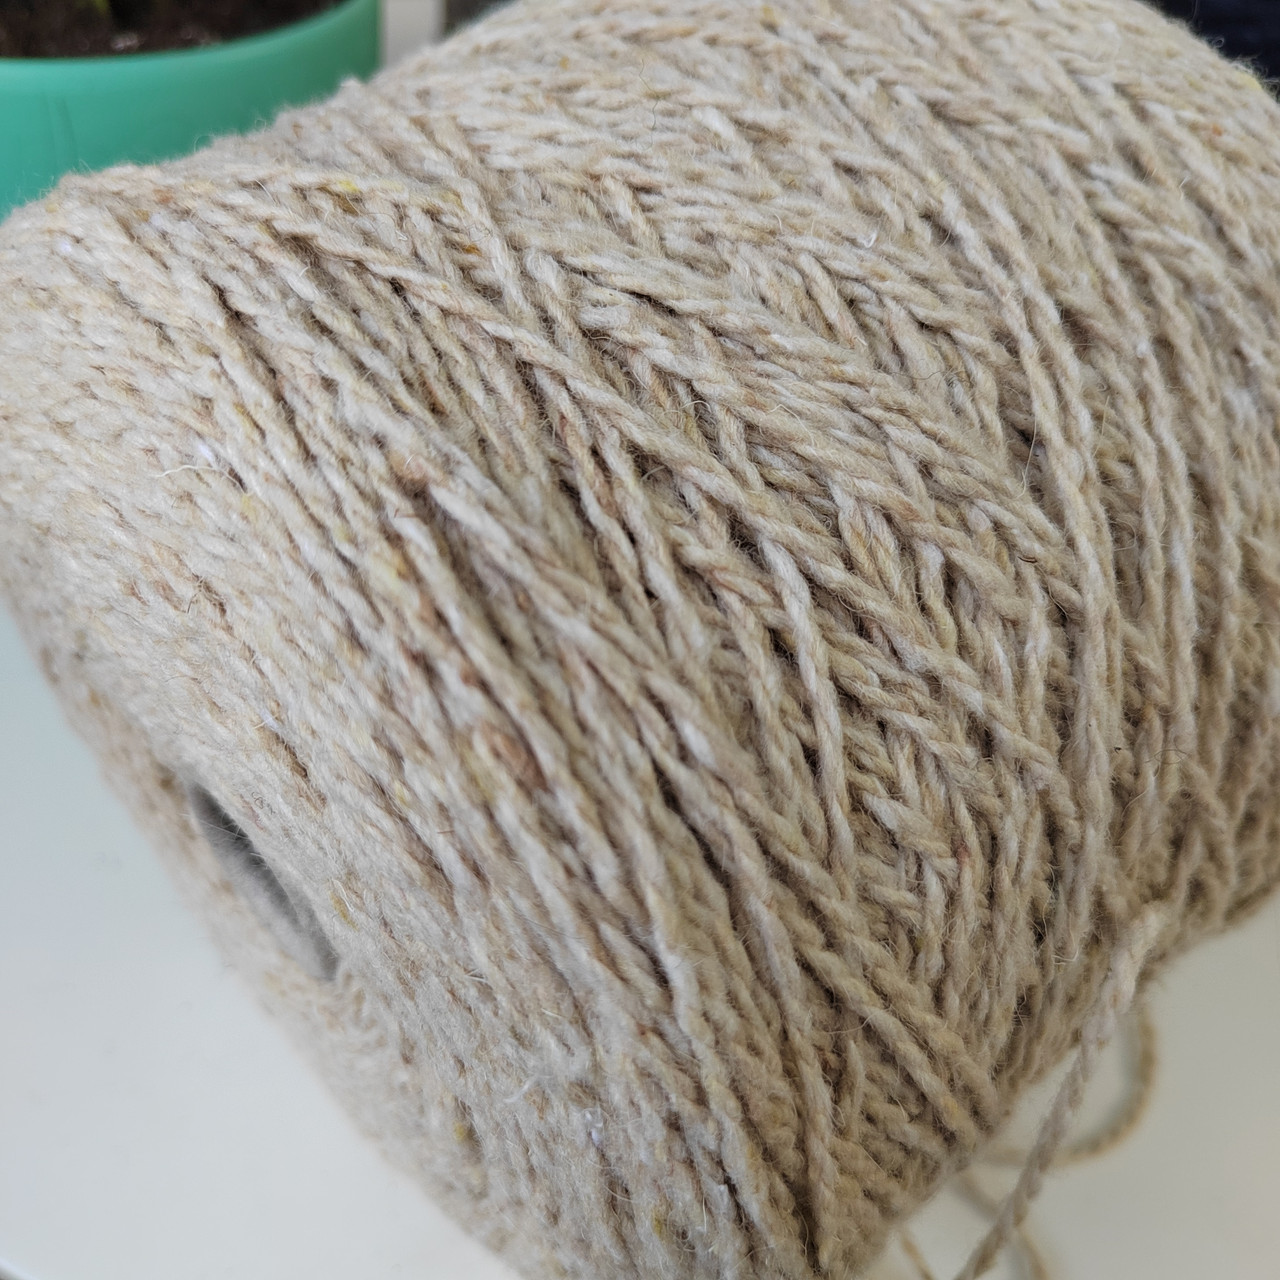 Filat Italia Tweed inverno 50%овечья шерсть, 40%акрил, 5%полиэстер, 5%ост. волокна 135м 100г цвет: песочный